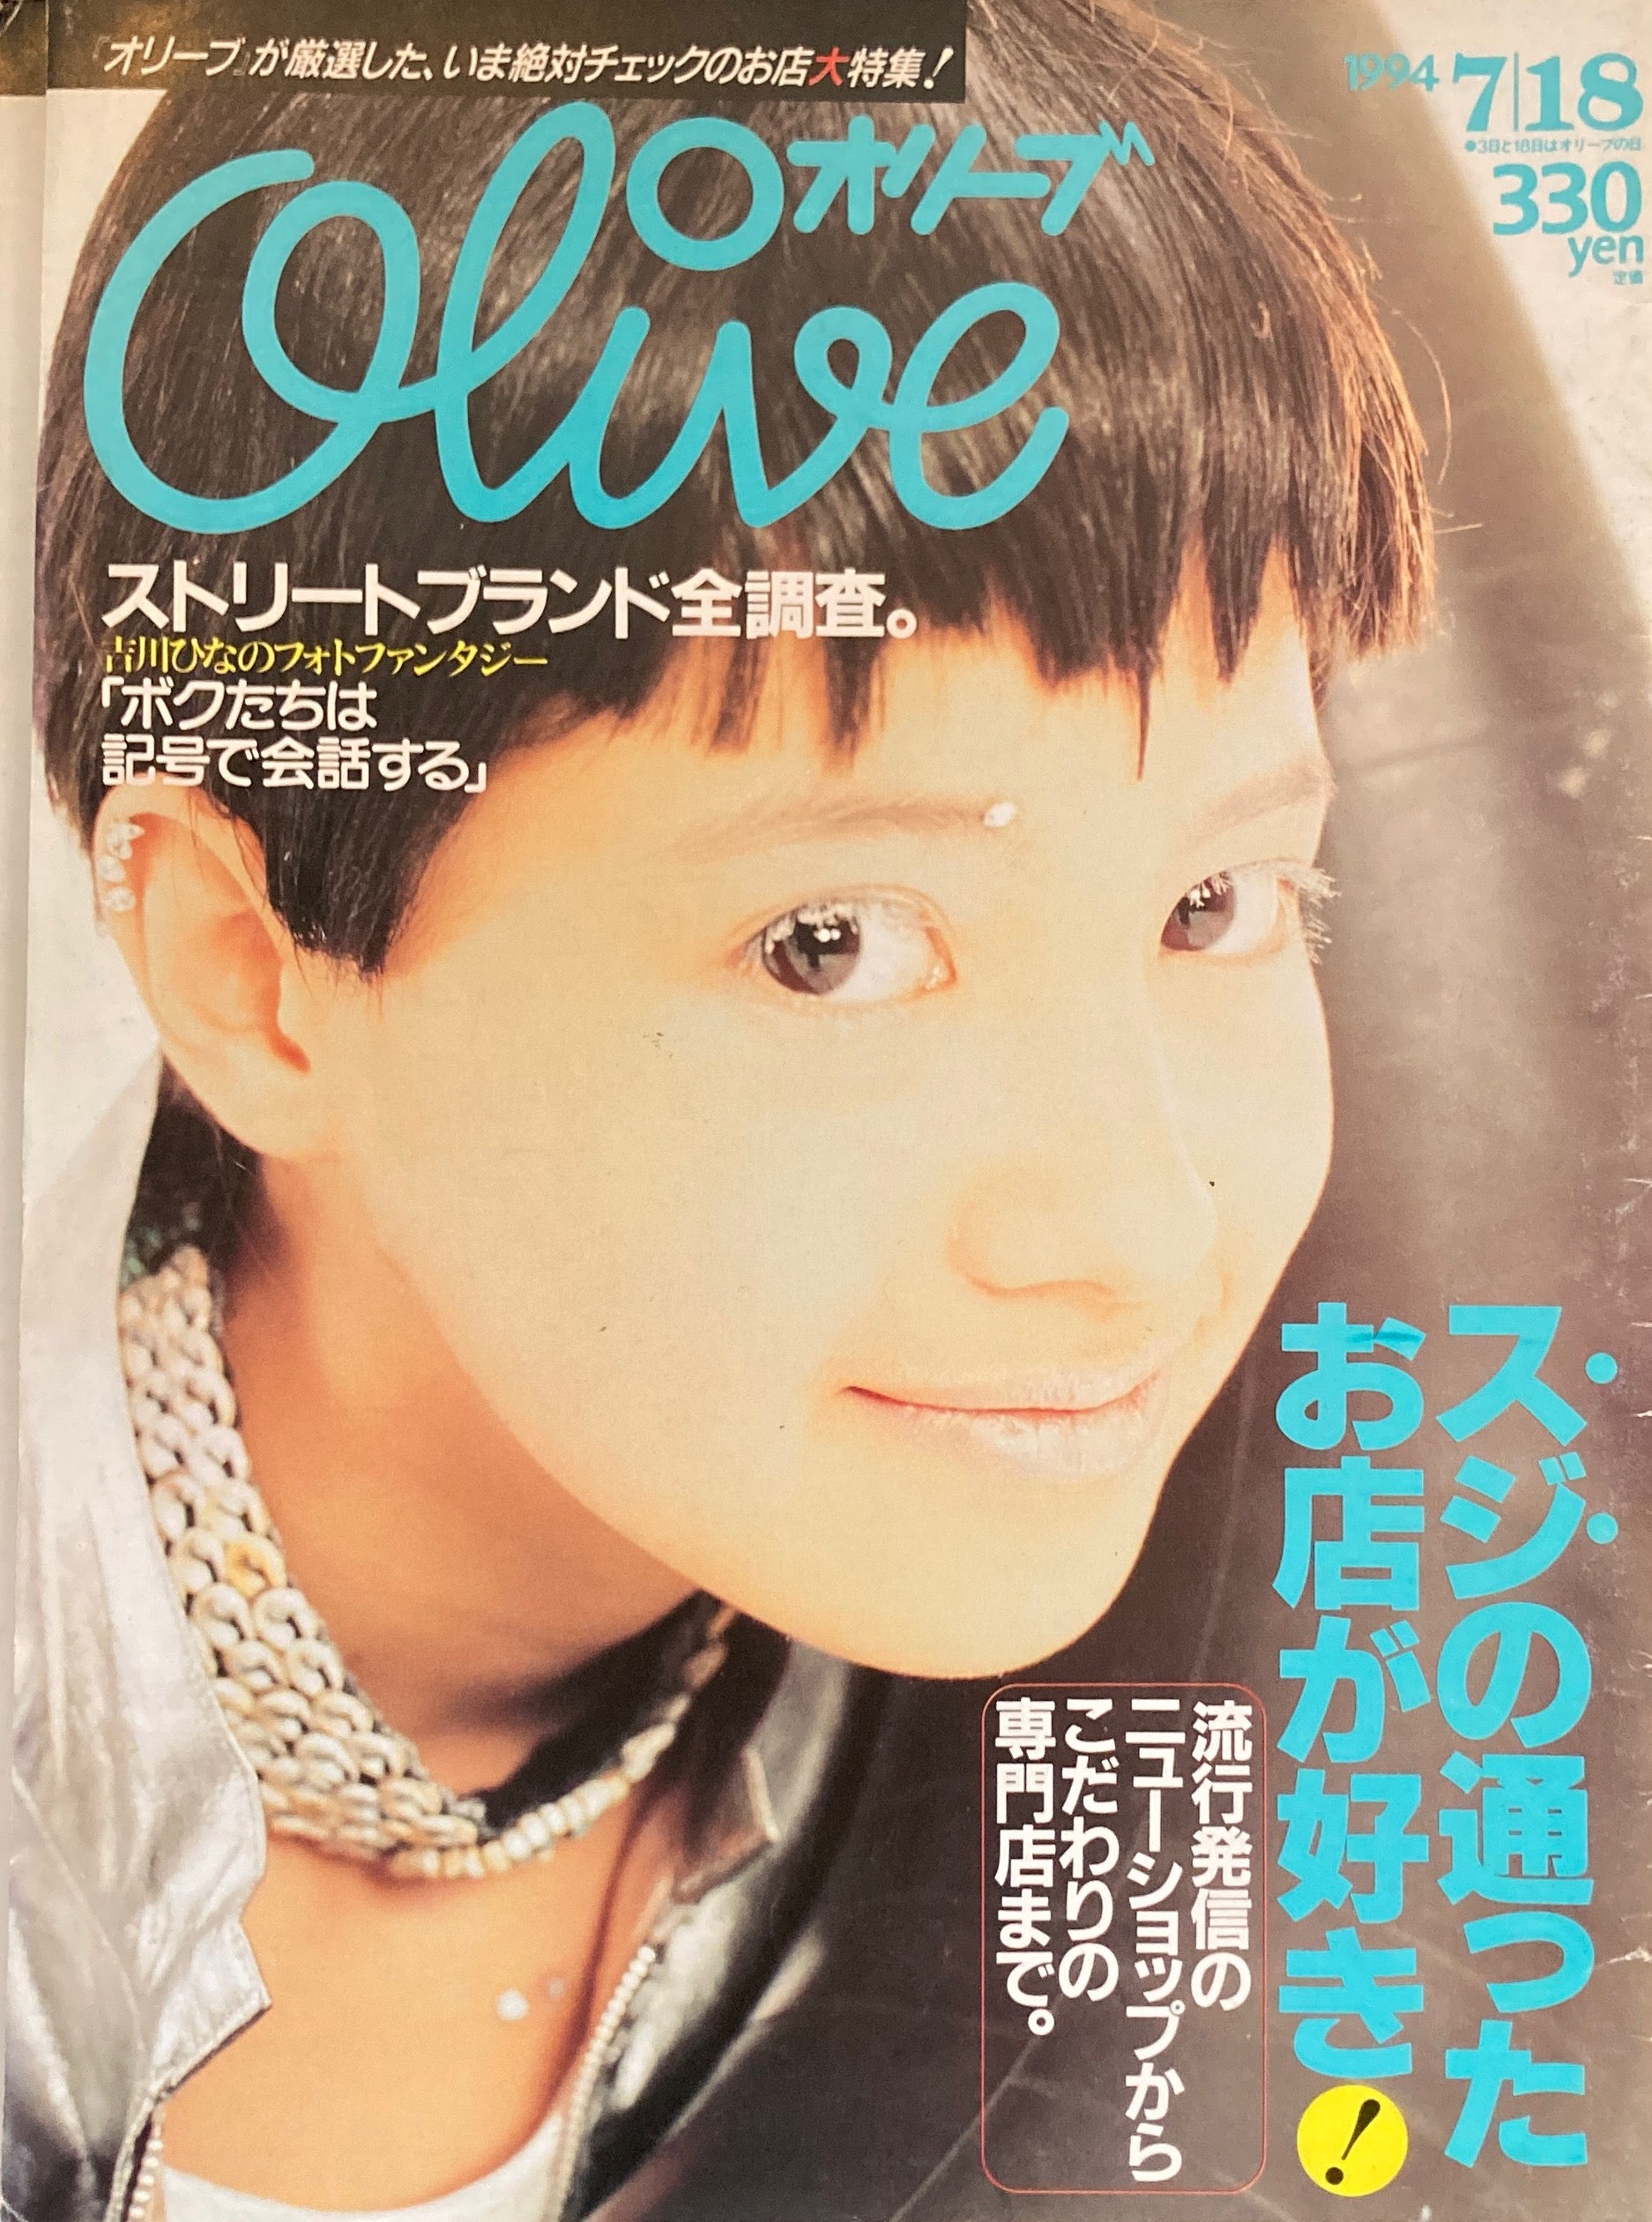 雑誌 オリーブ•olive 279号 1994年 7 18号 - ファッション